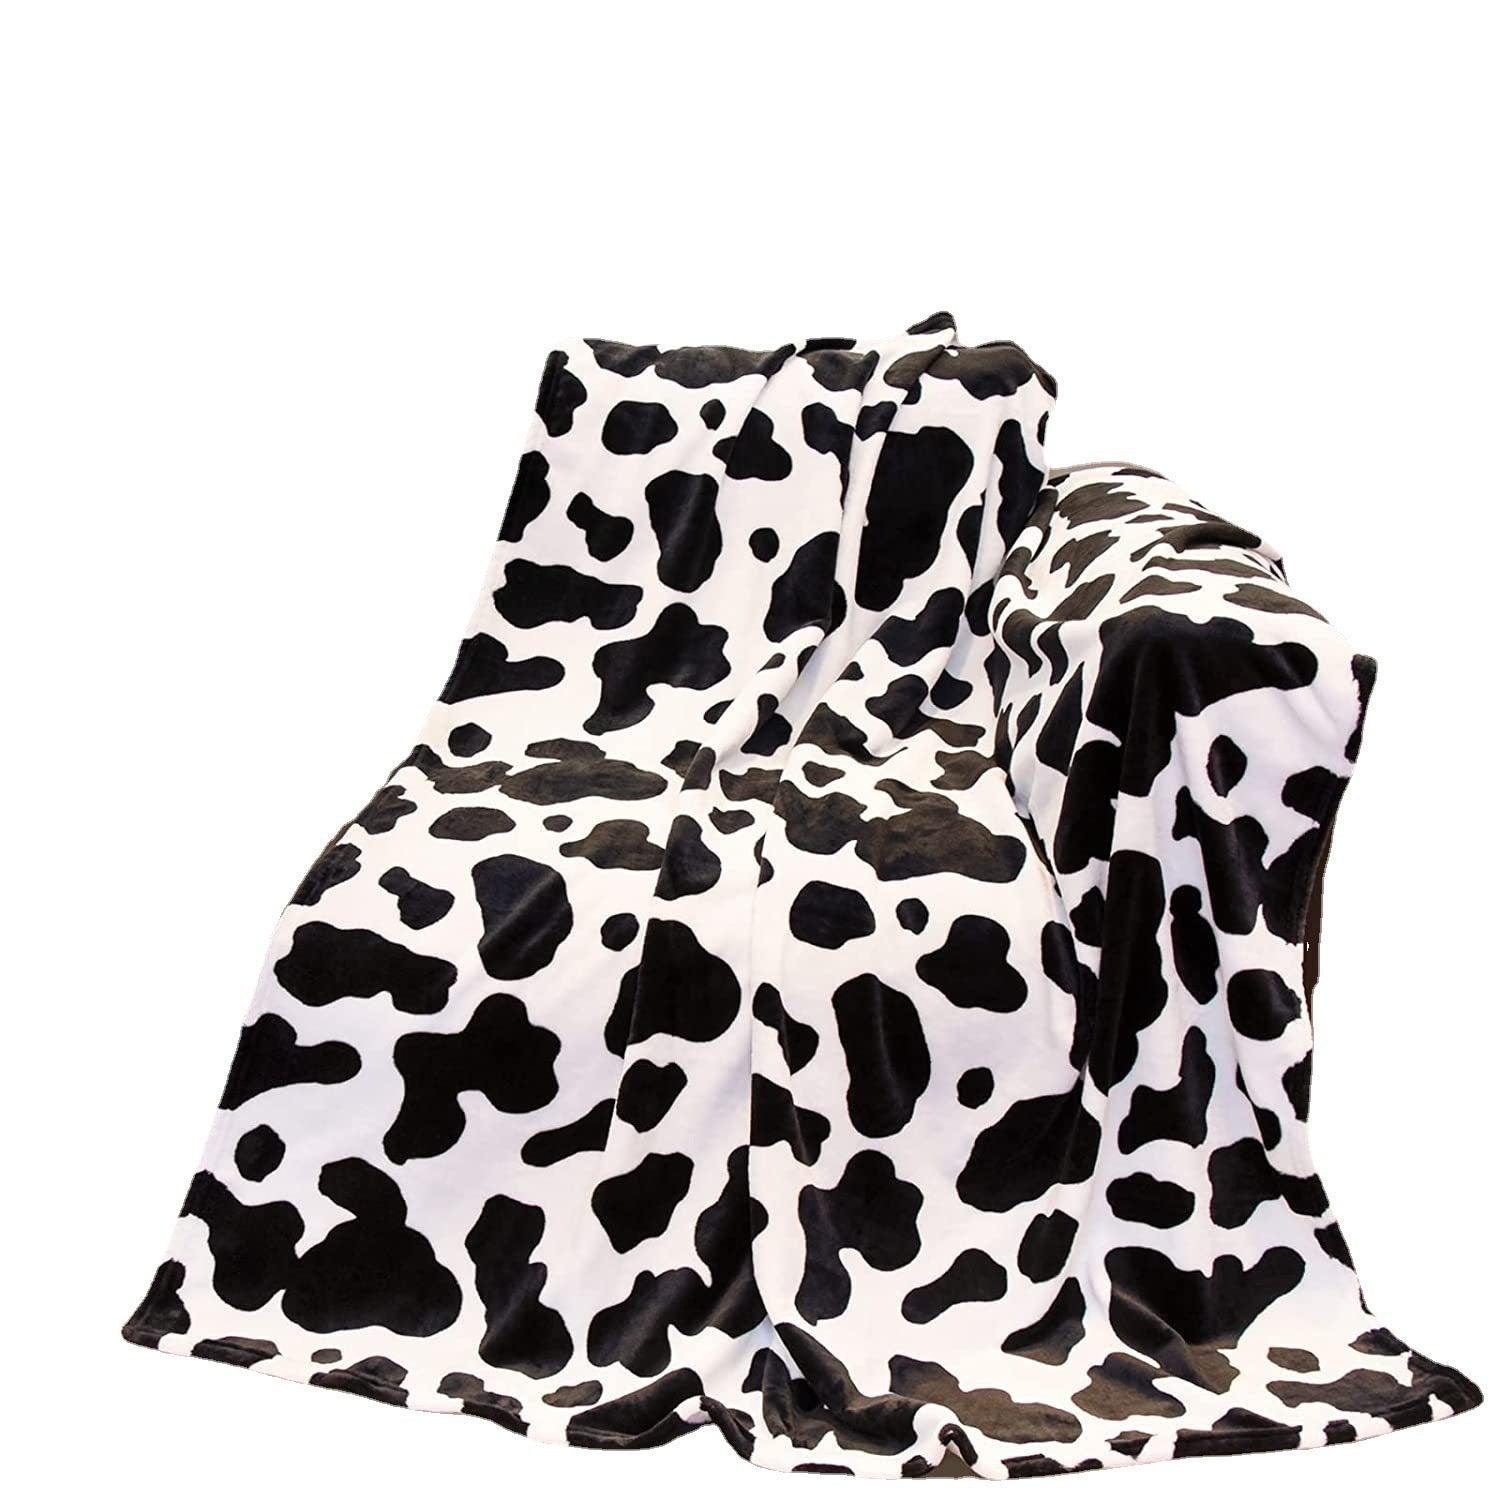 Cow Printing Blanket Digital Flannel  